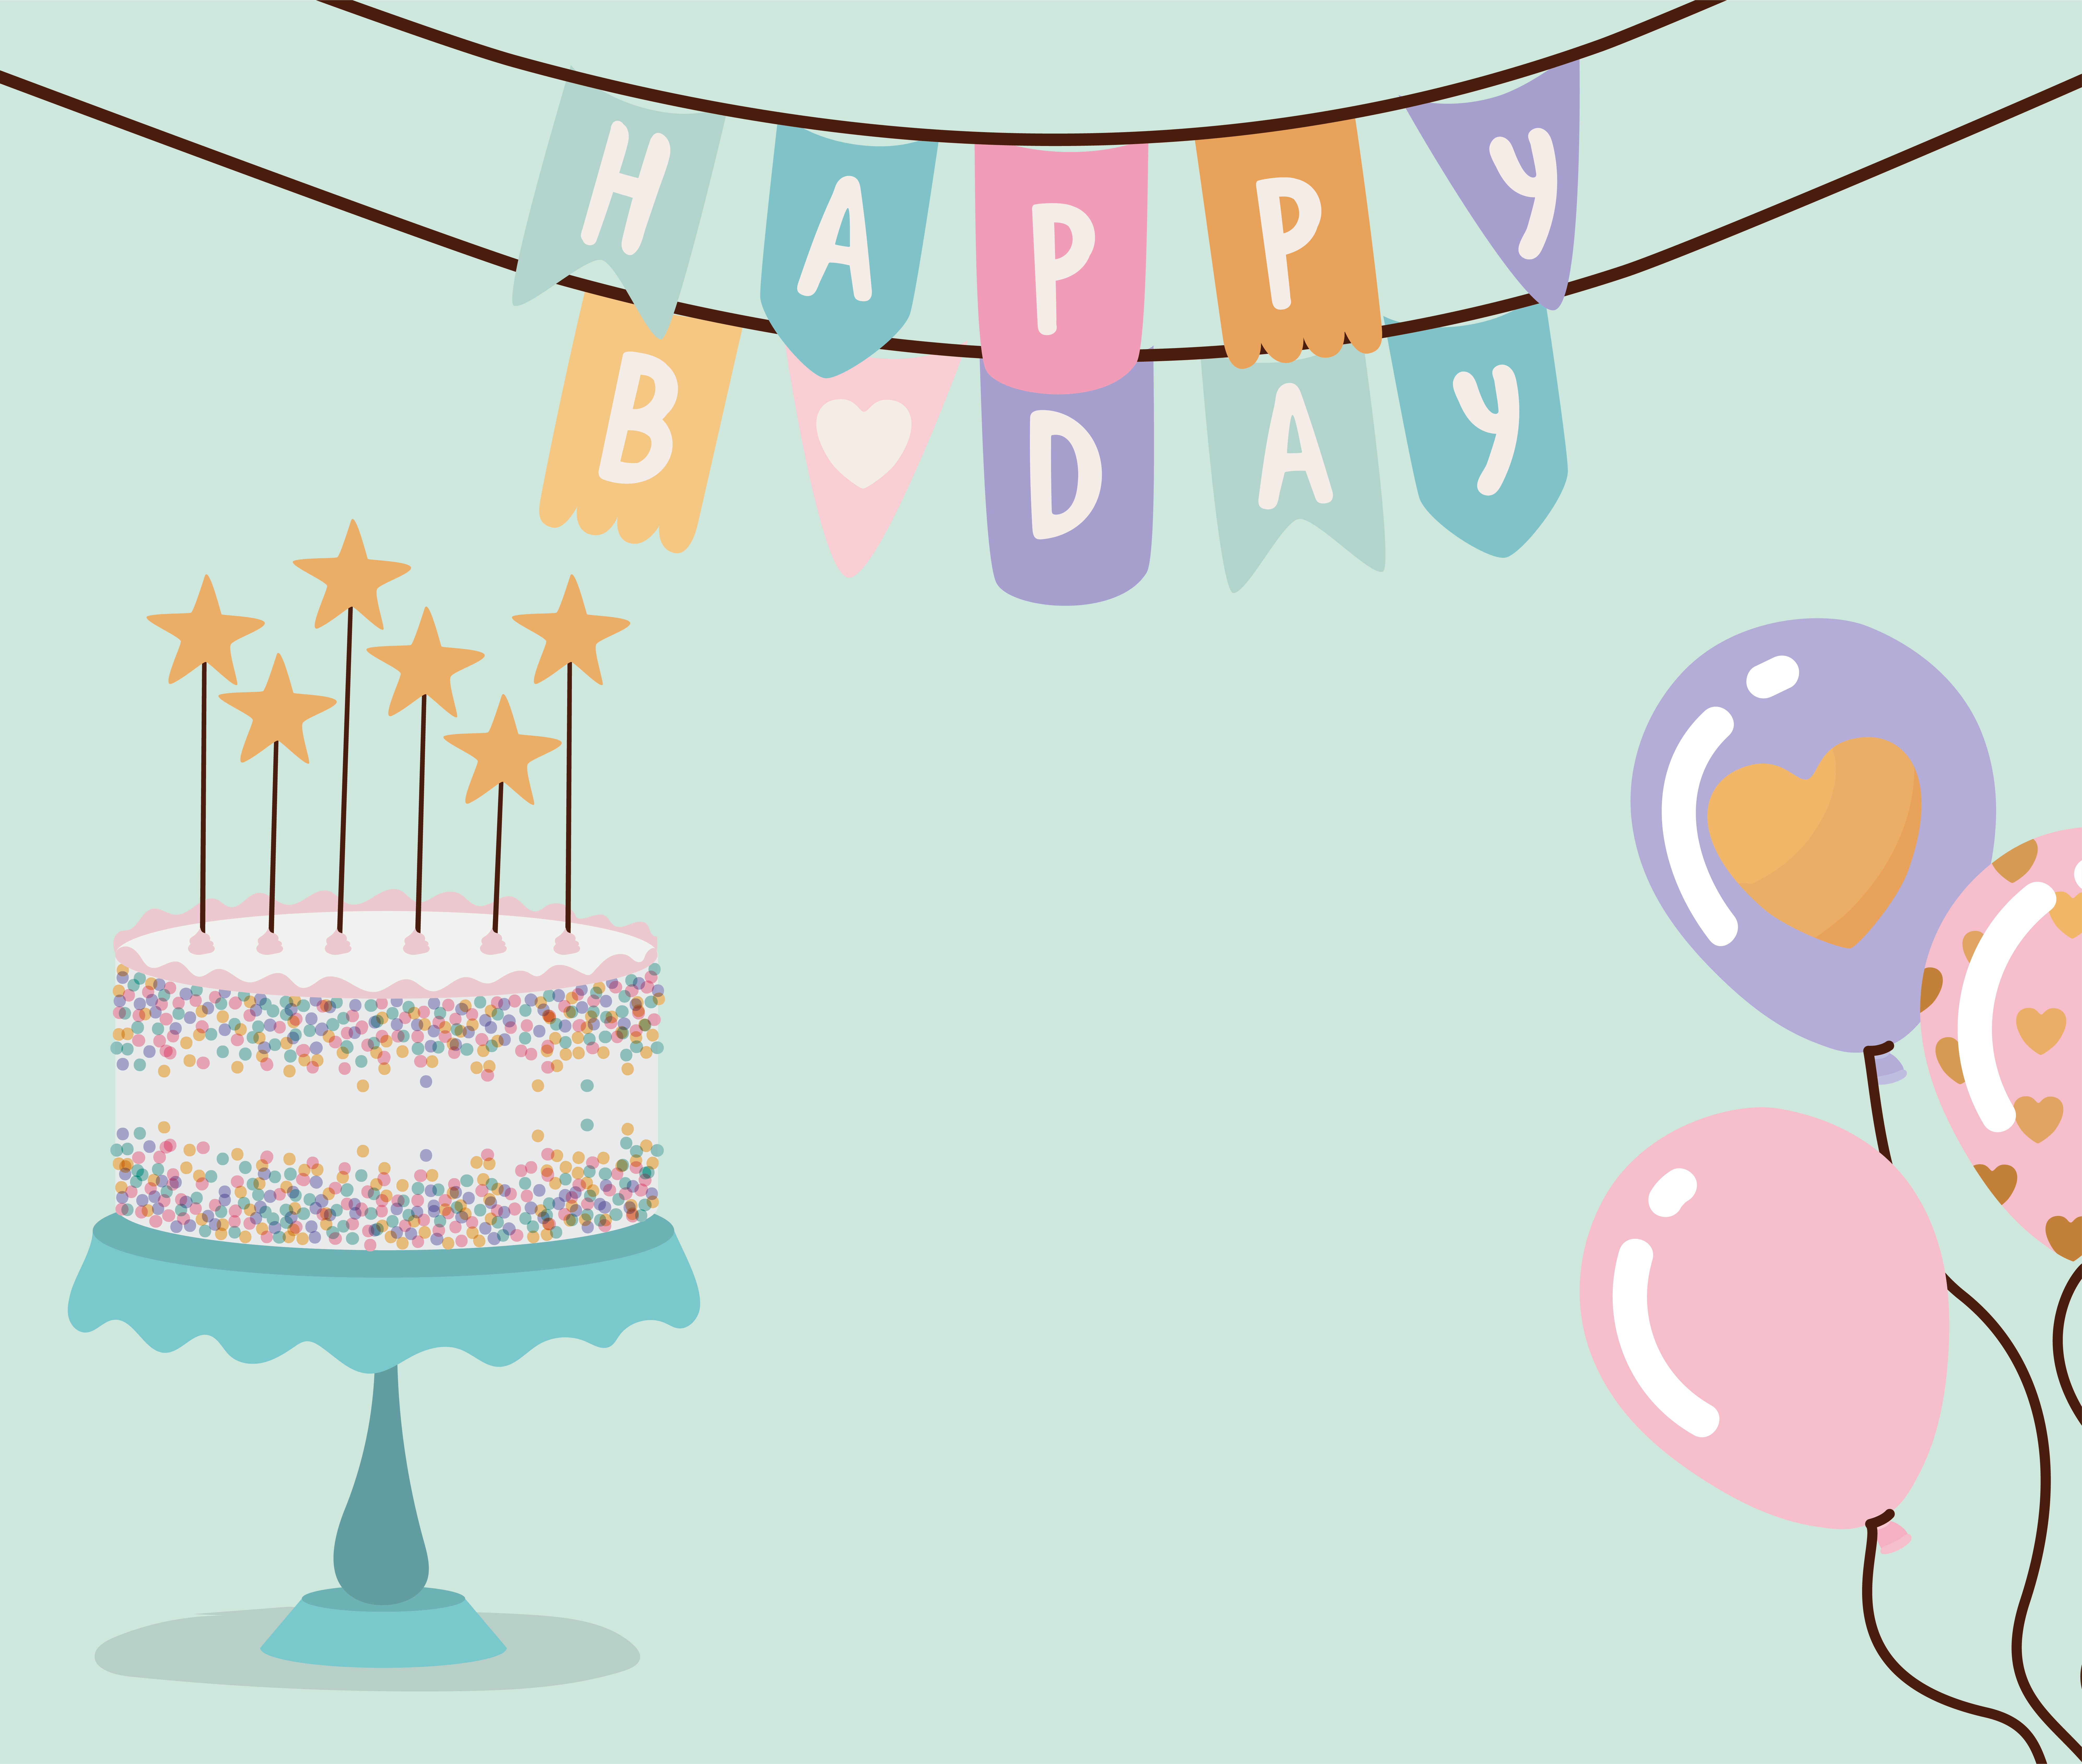 Dây chúc mừng sinh nhật với chiếc bánh sinh nhật và bóng bay trên nền màu xanh lá cây sẽ mang đến cho bạn một không gian đầy vui và sinh động. Hãy cùng xem hình ảnh để cảm nhận sự đáng yêu, tươi vui của chiếc bánh sinh nhật và bóng bay sặc sỡ.